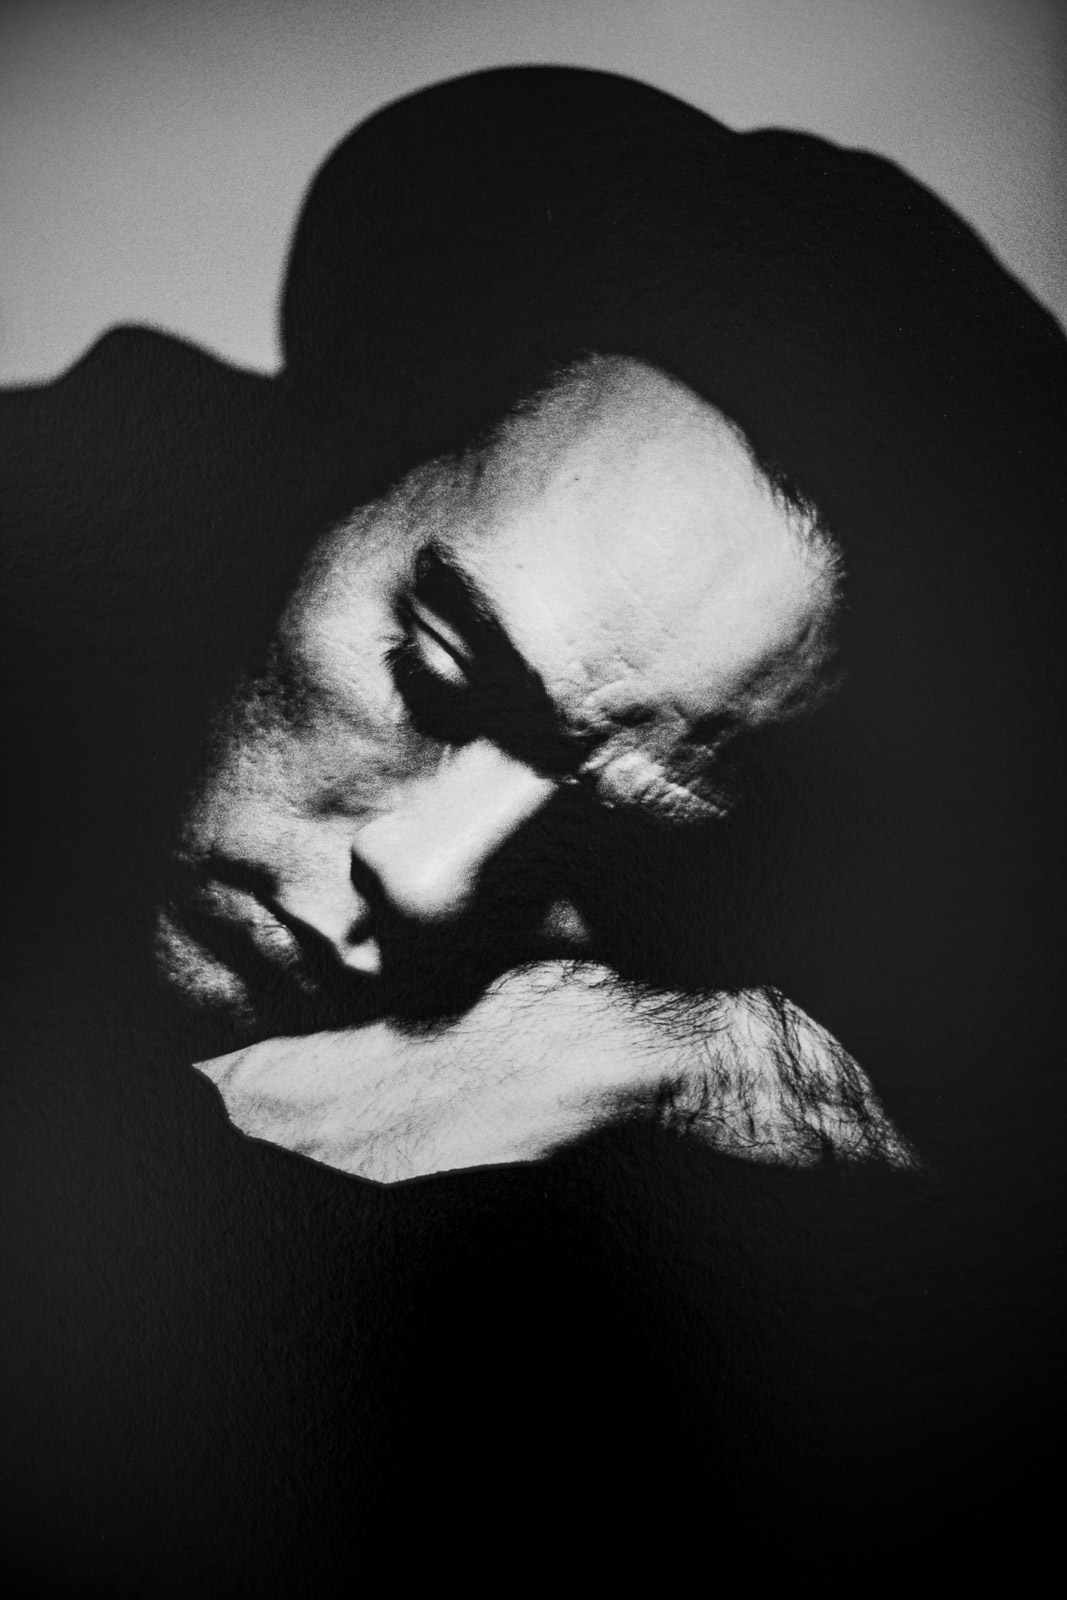 Michael Stipe by Anton Corbijn